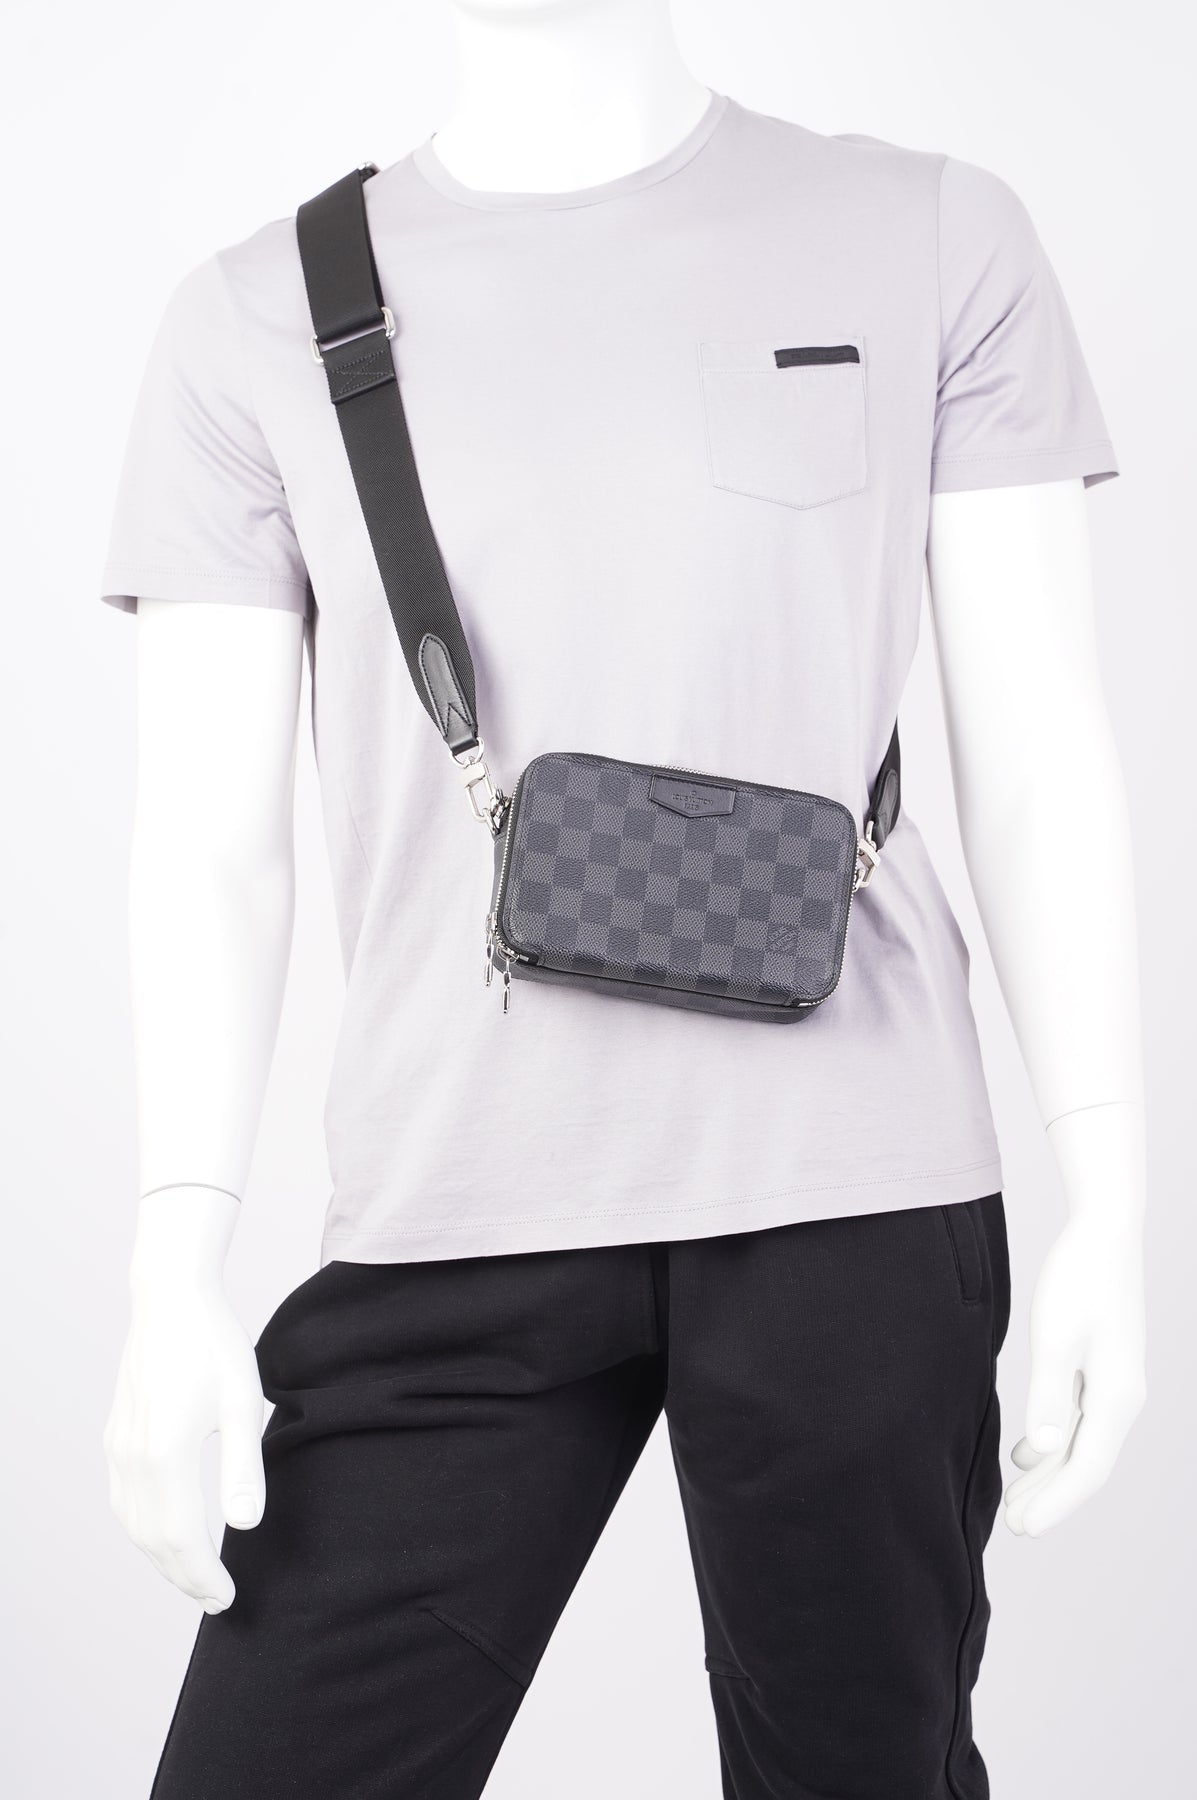 Vuitton alpha wearable wallet bag